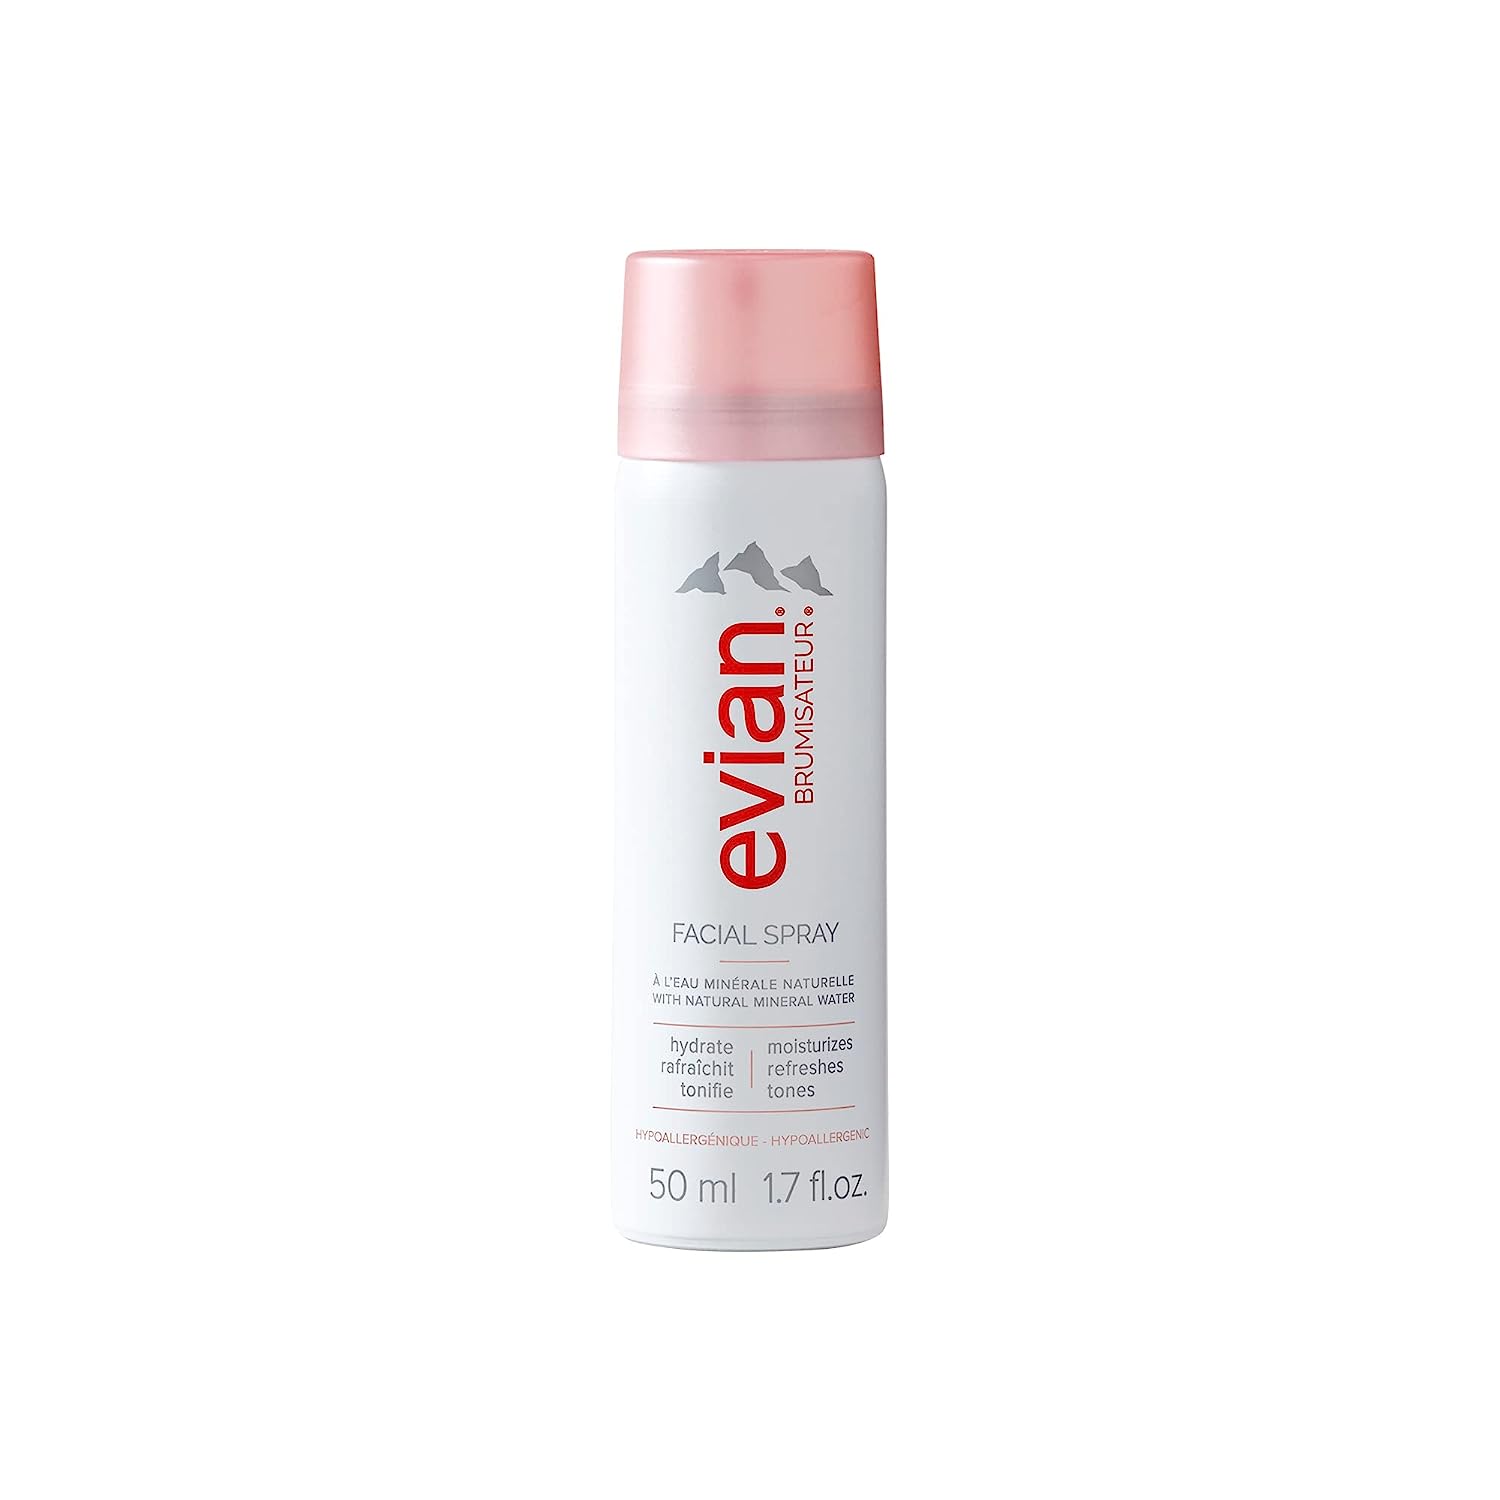 Evian Facial Spray, 1.7 oz.